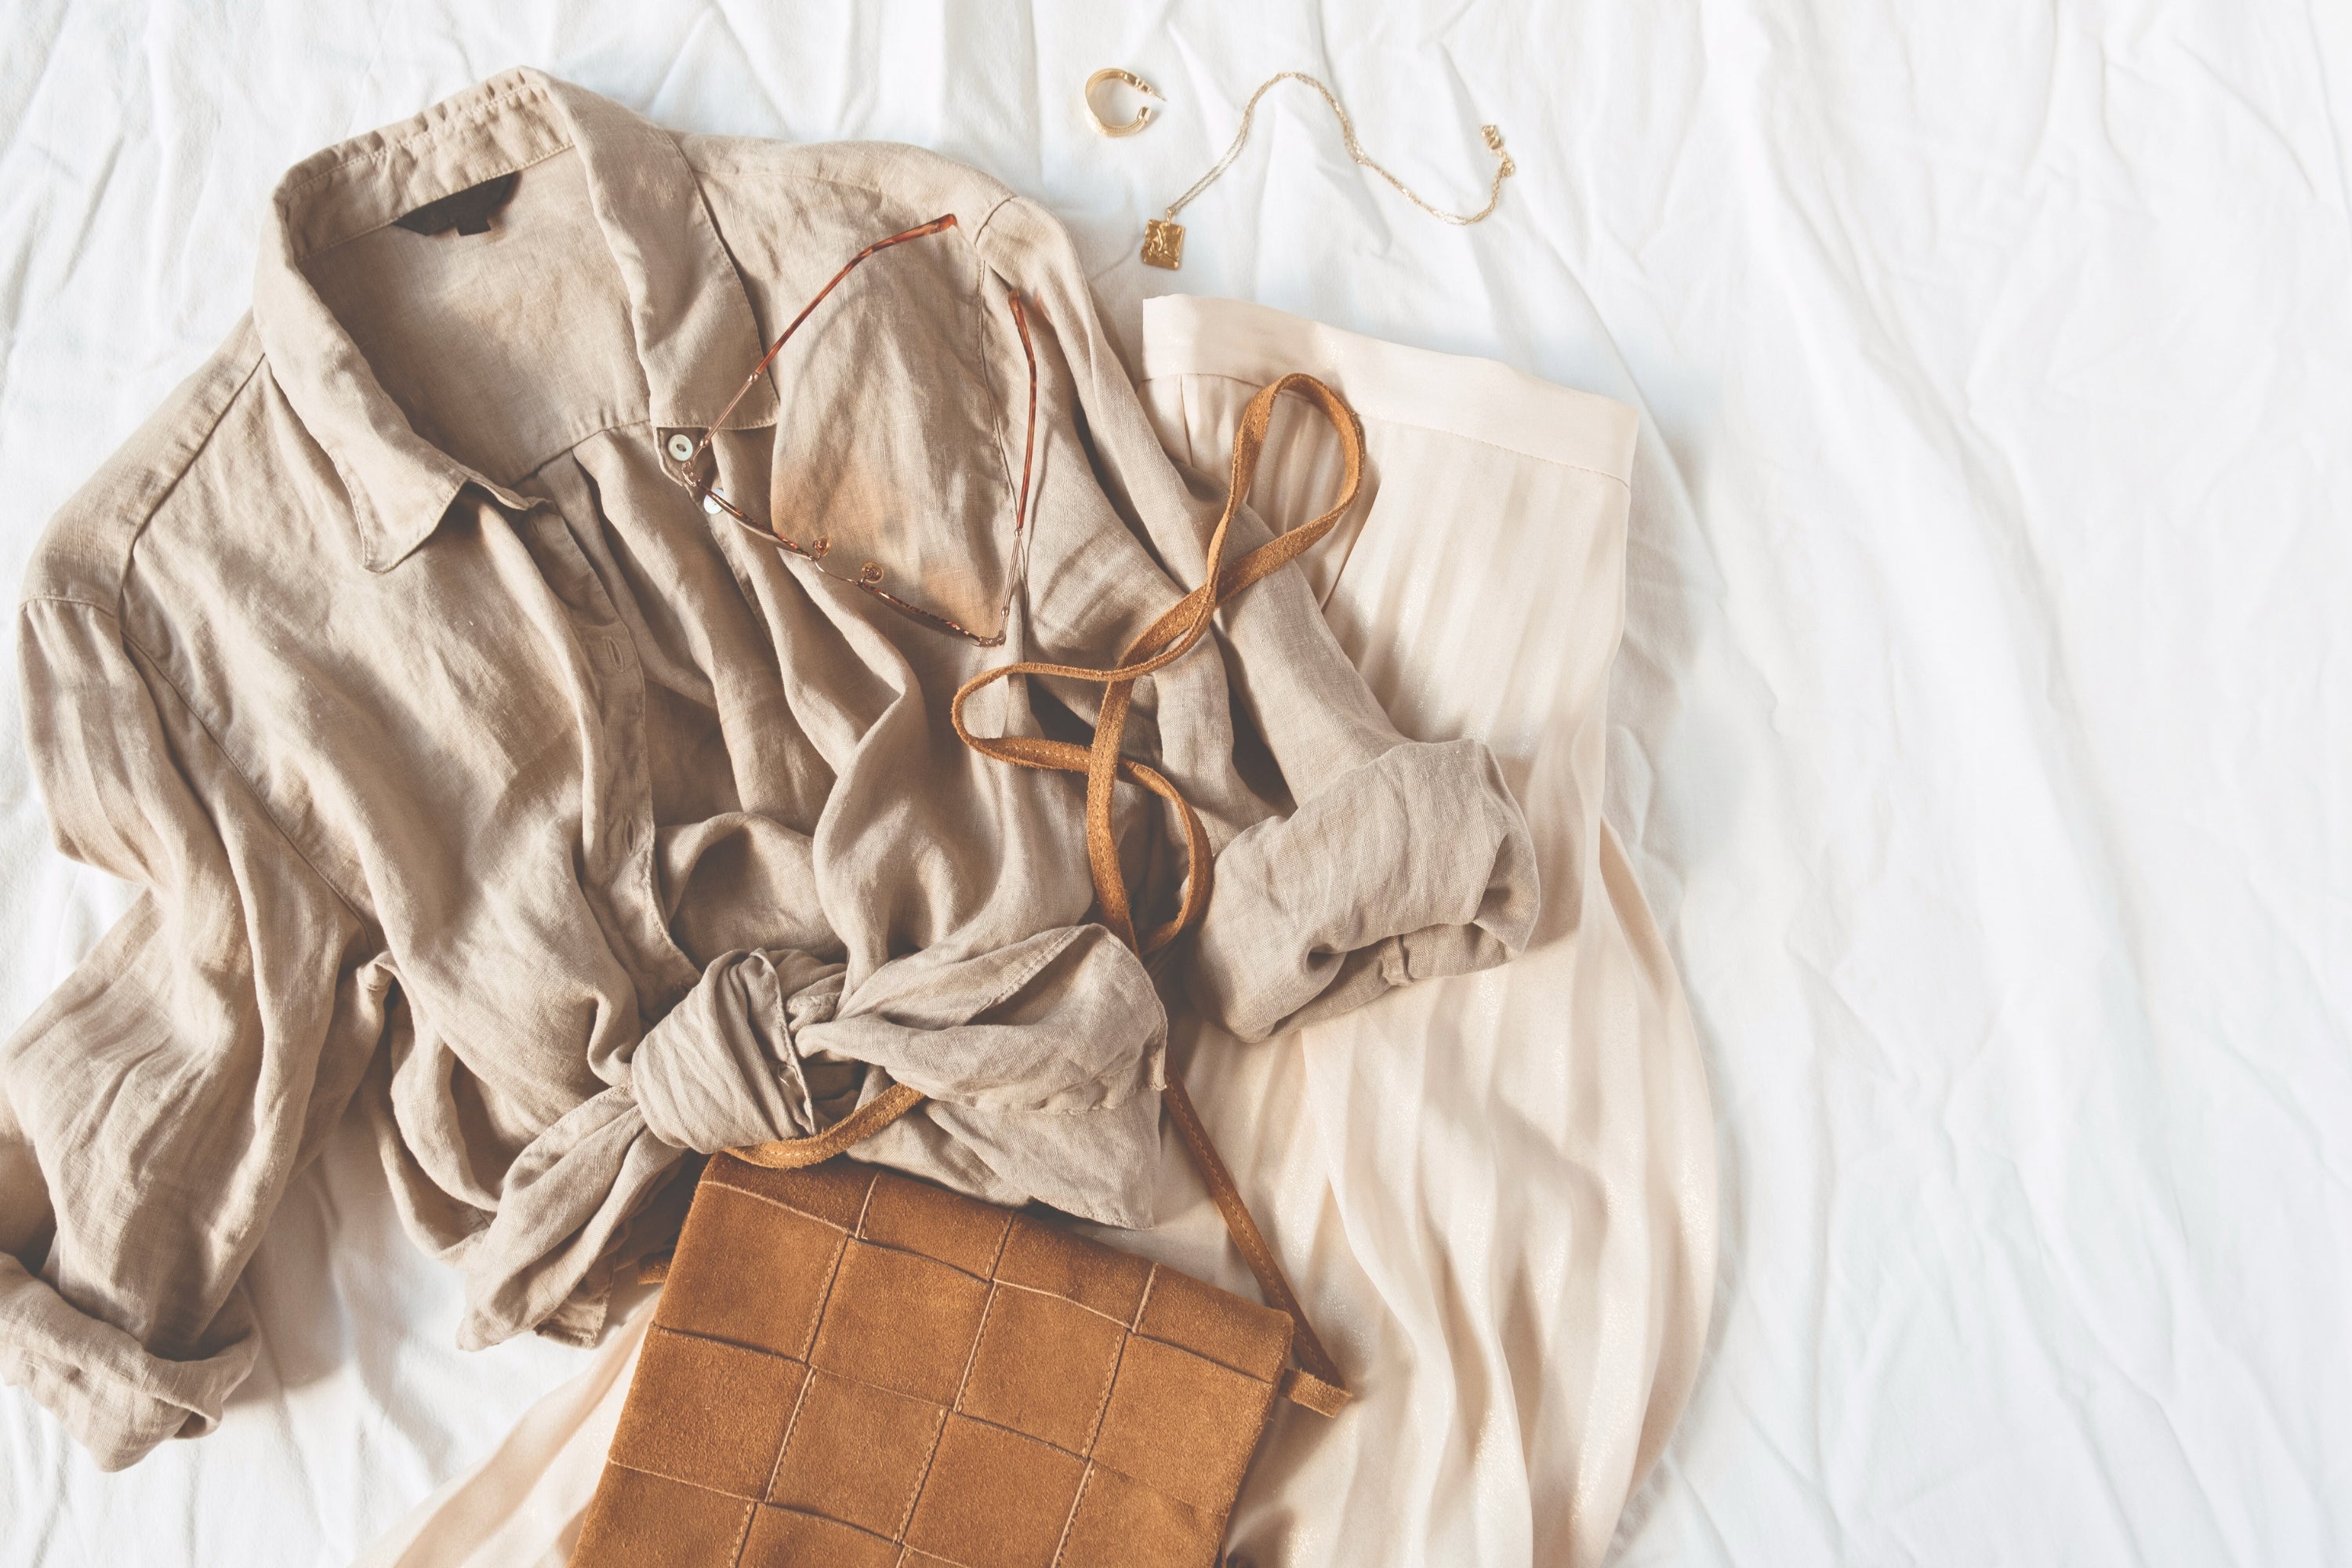 Nachhaltigkeit im Kleiderschrank – Tipps für einen bewussteren Stil